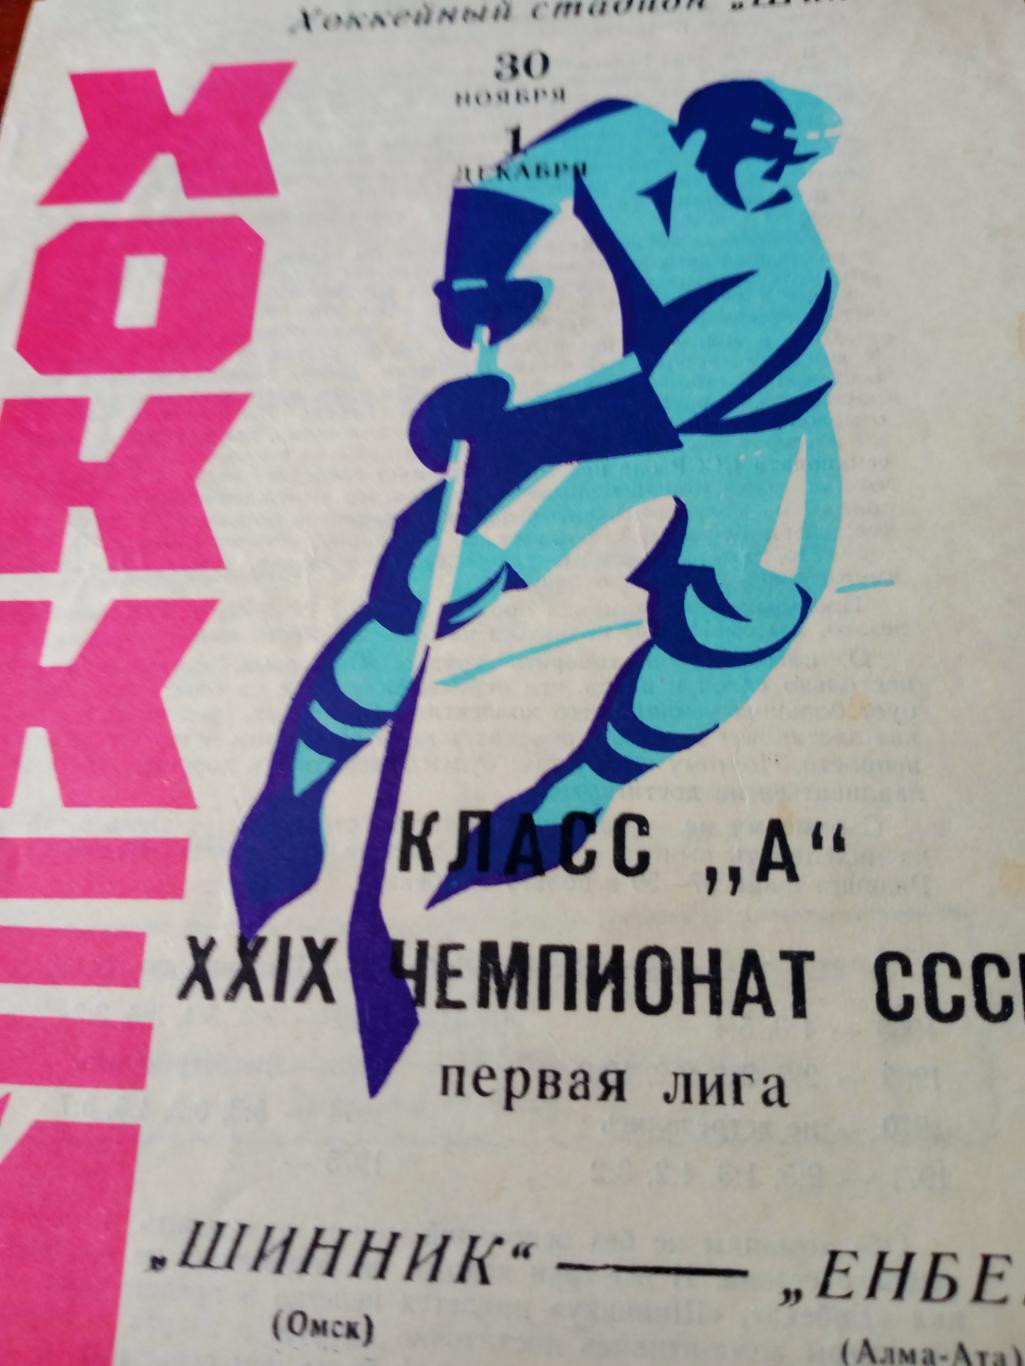 Шинник Омск - Енбек Алма-Ата. 30 ноября и 1 декабря 1974 год